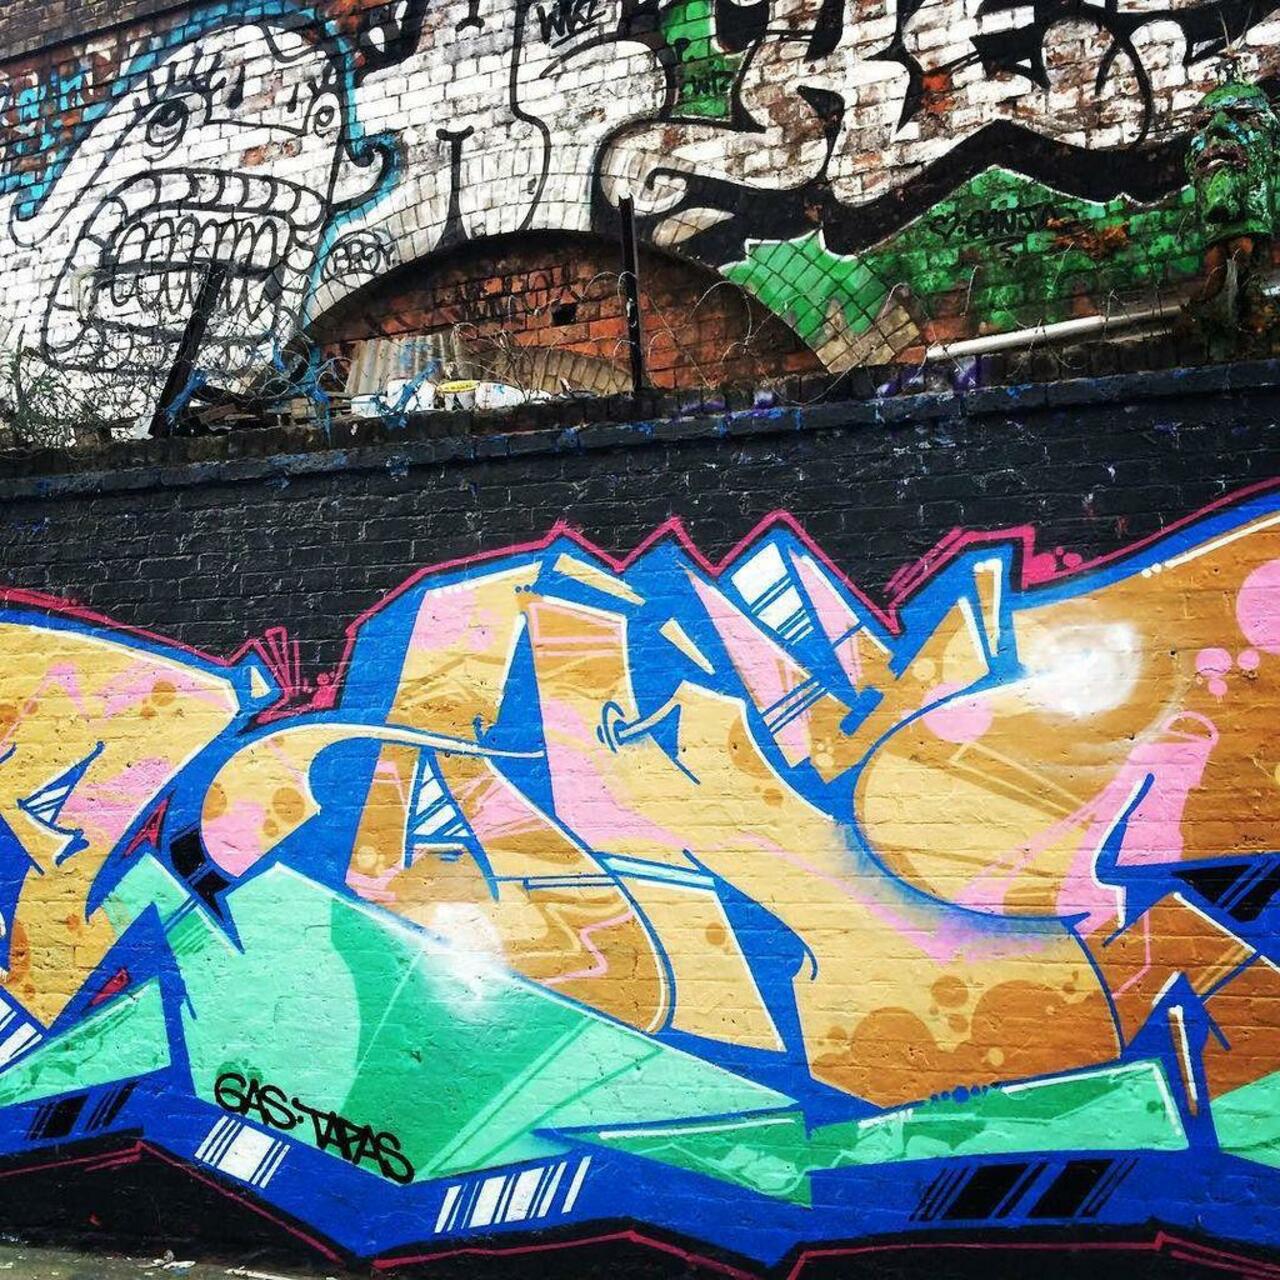 #graffitiporn  #wallporn #mural  #murales  #graffitiporn #lovestreetart #streetart #graffiti #london #loveshoreditc… http://t.co/ca73kxgshu